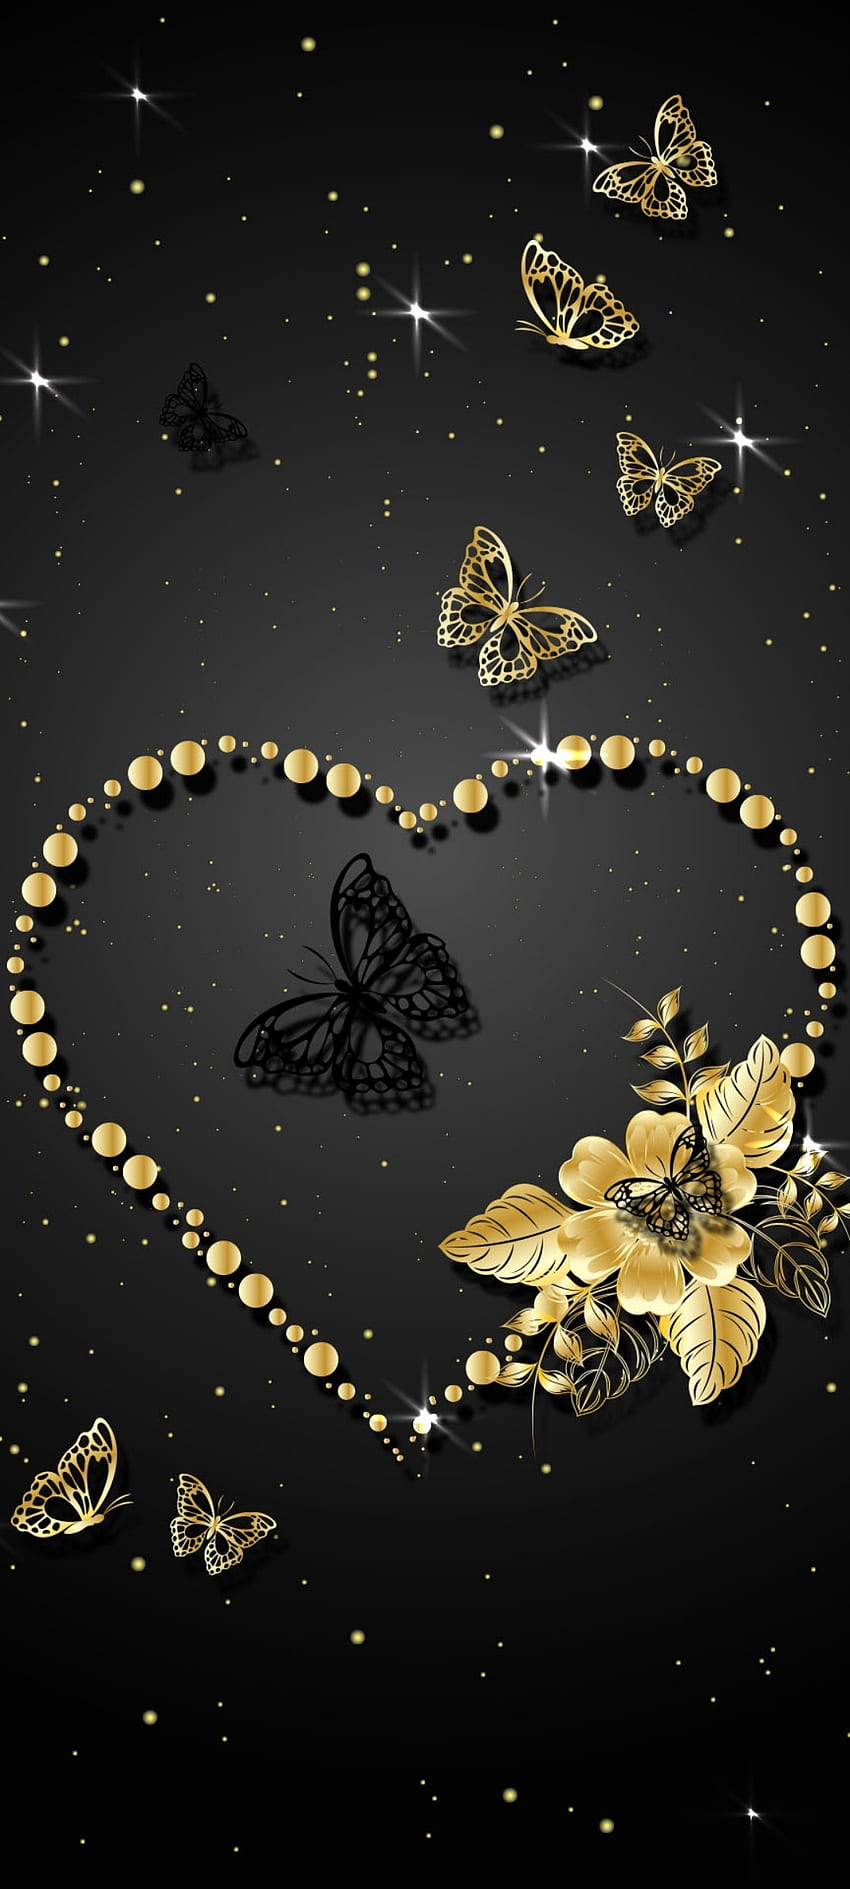 Heart and Butterfly, gold, love, art, moths and butterflies ...